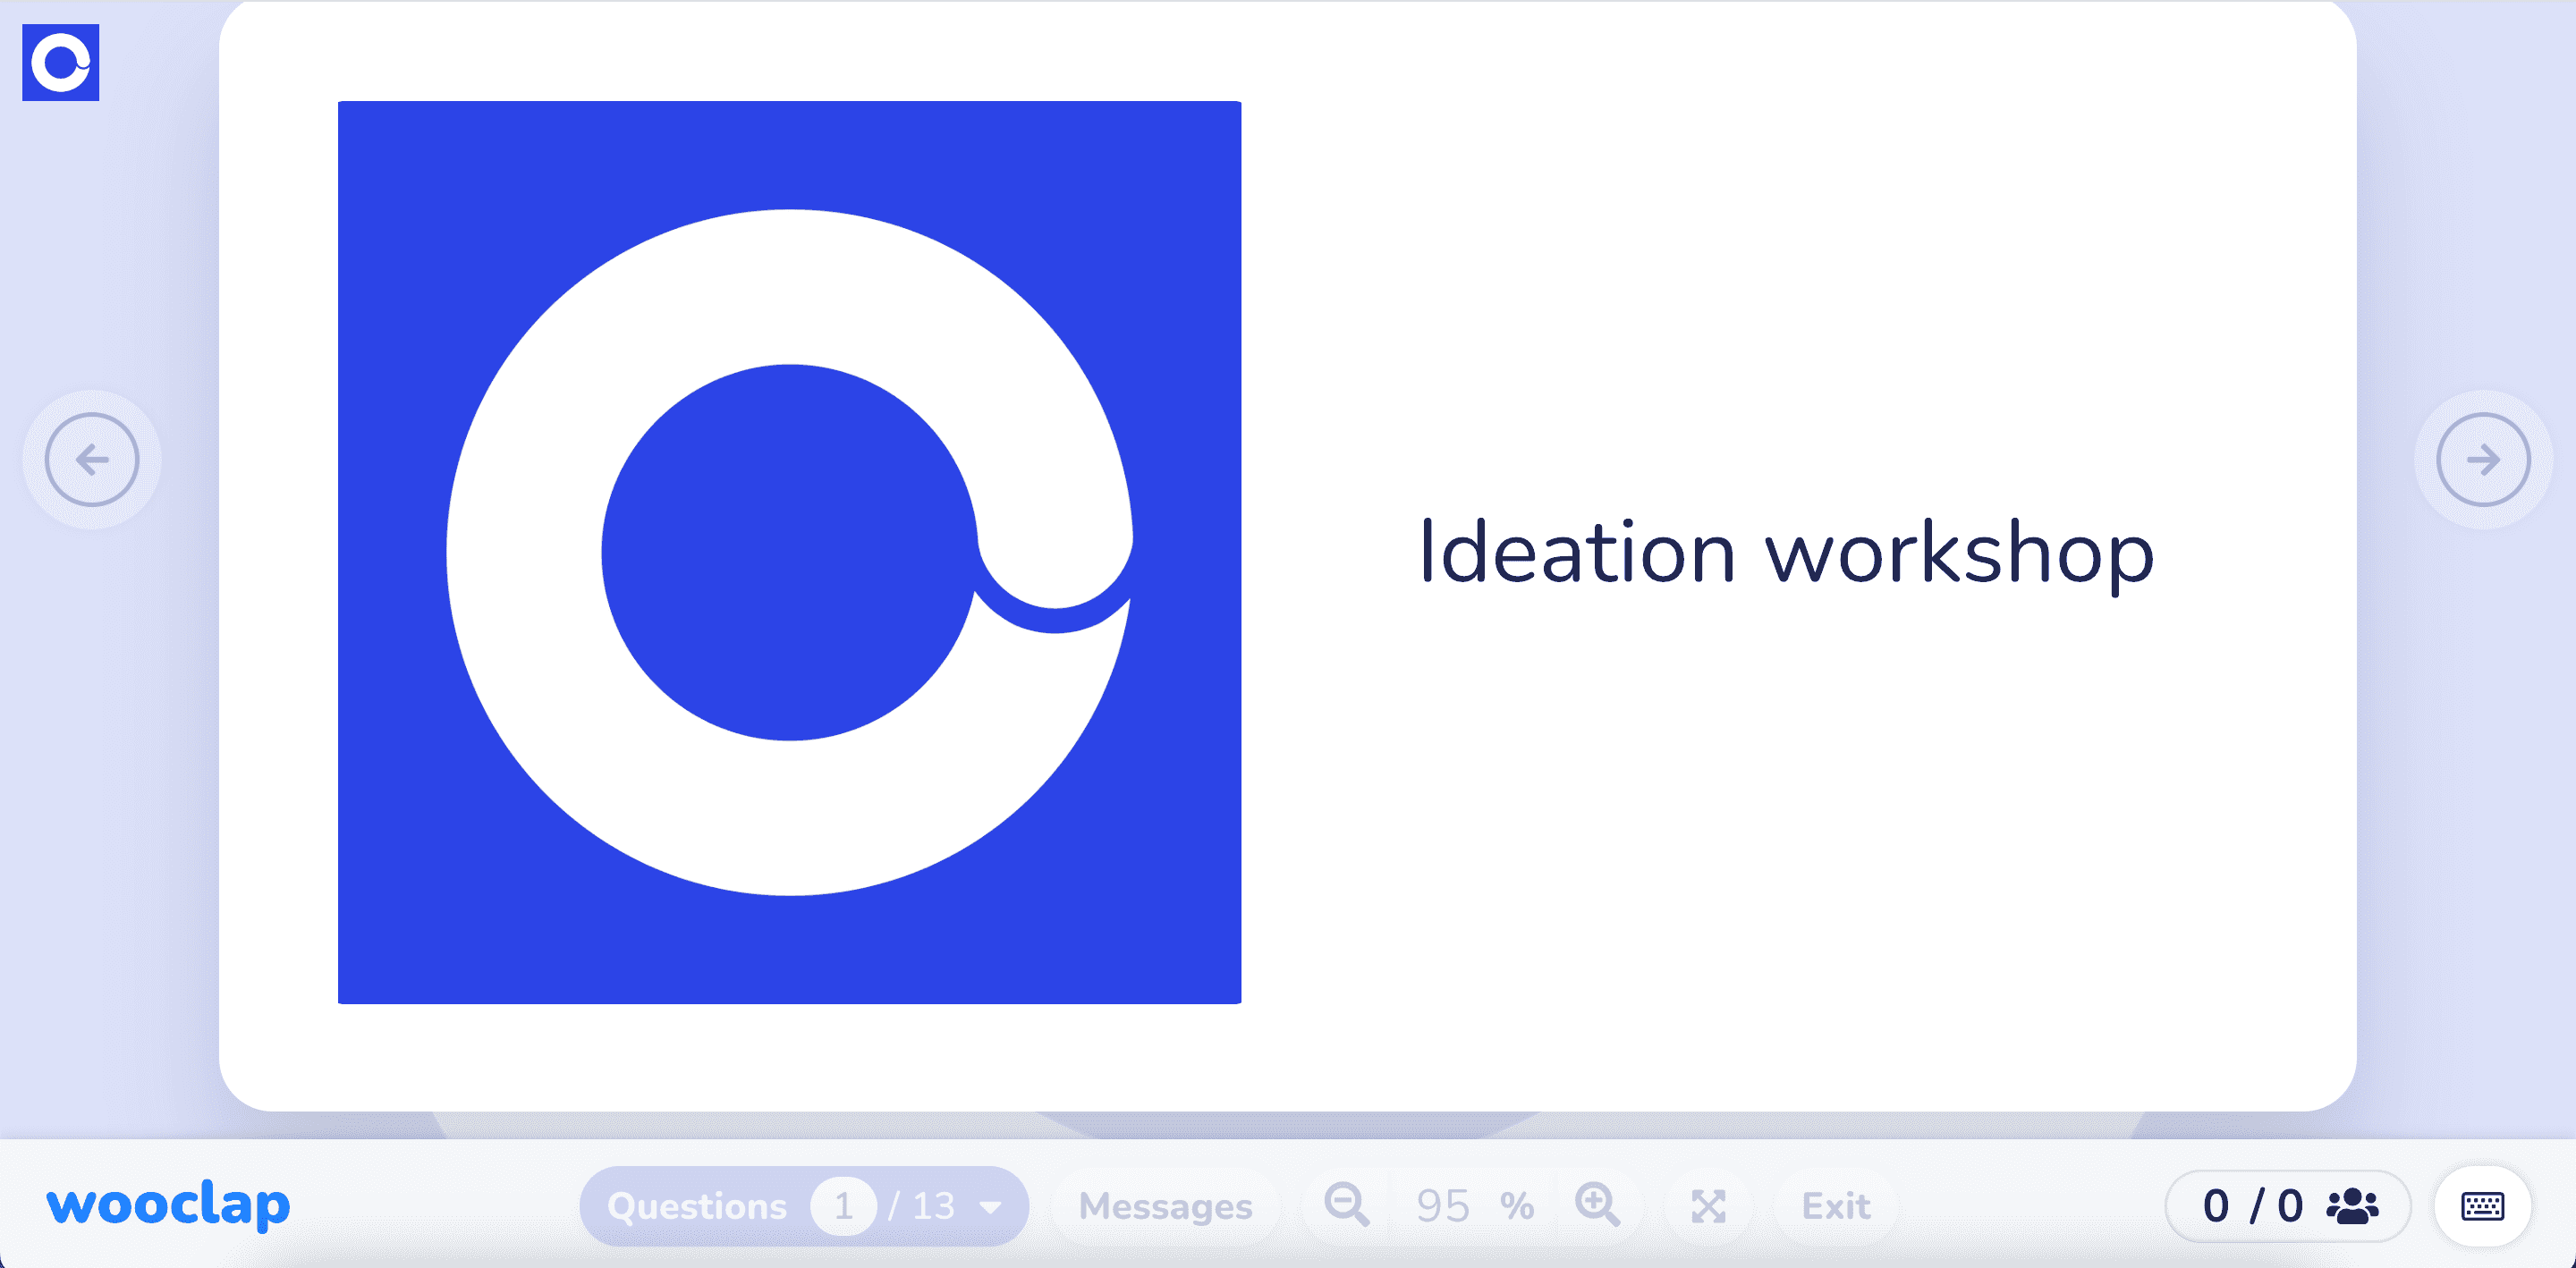 Ideation workshop
